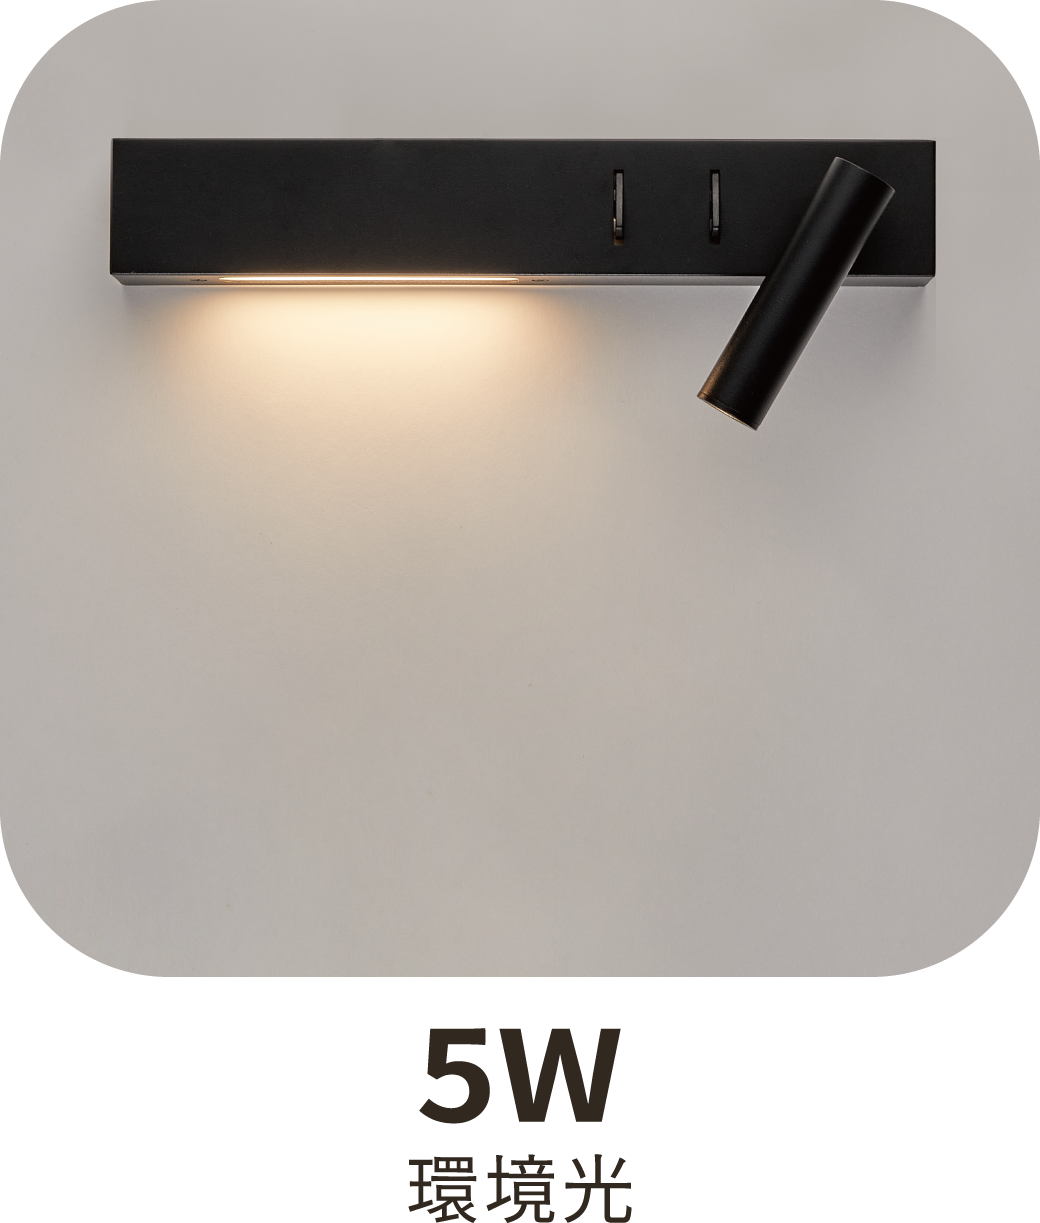 【舞光】LED 梅林床頭壁燈 燈體附雙開關 三種燈光模式 全電壓 適用橫式預埋盒